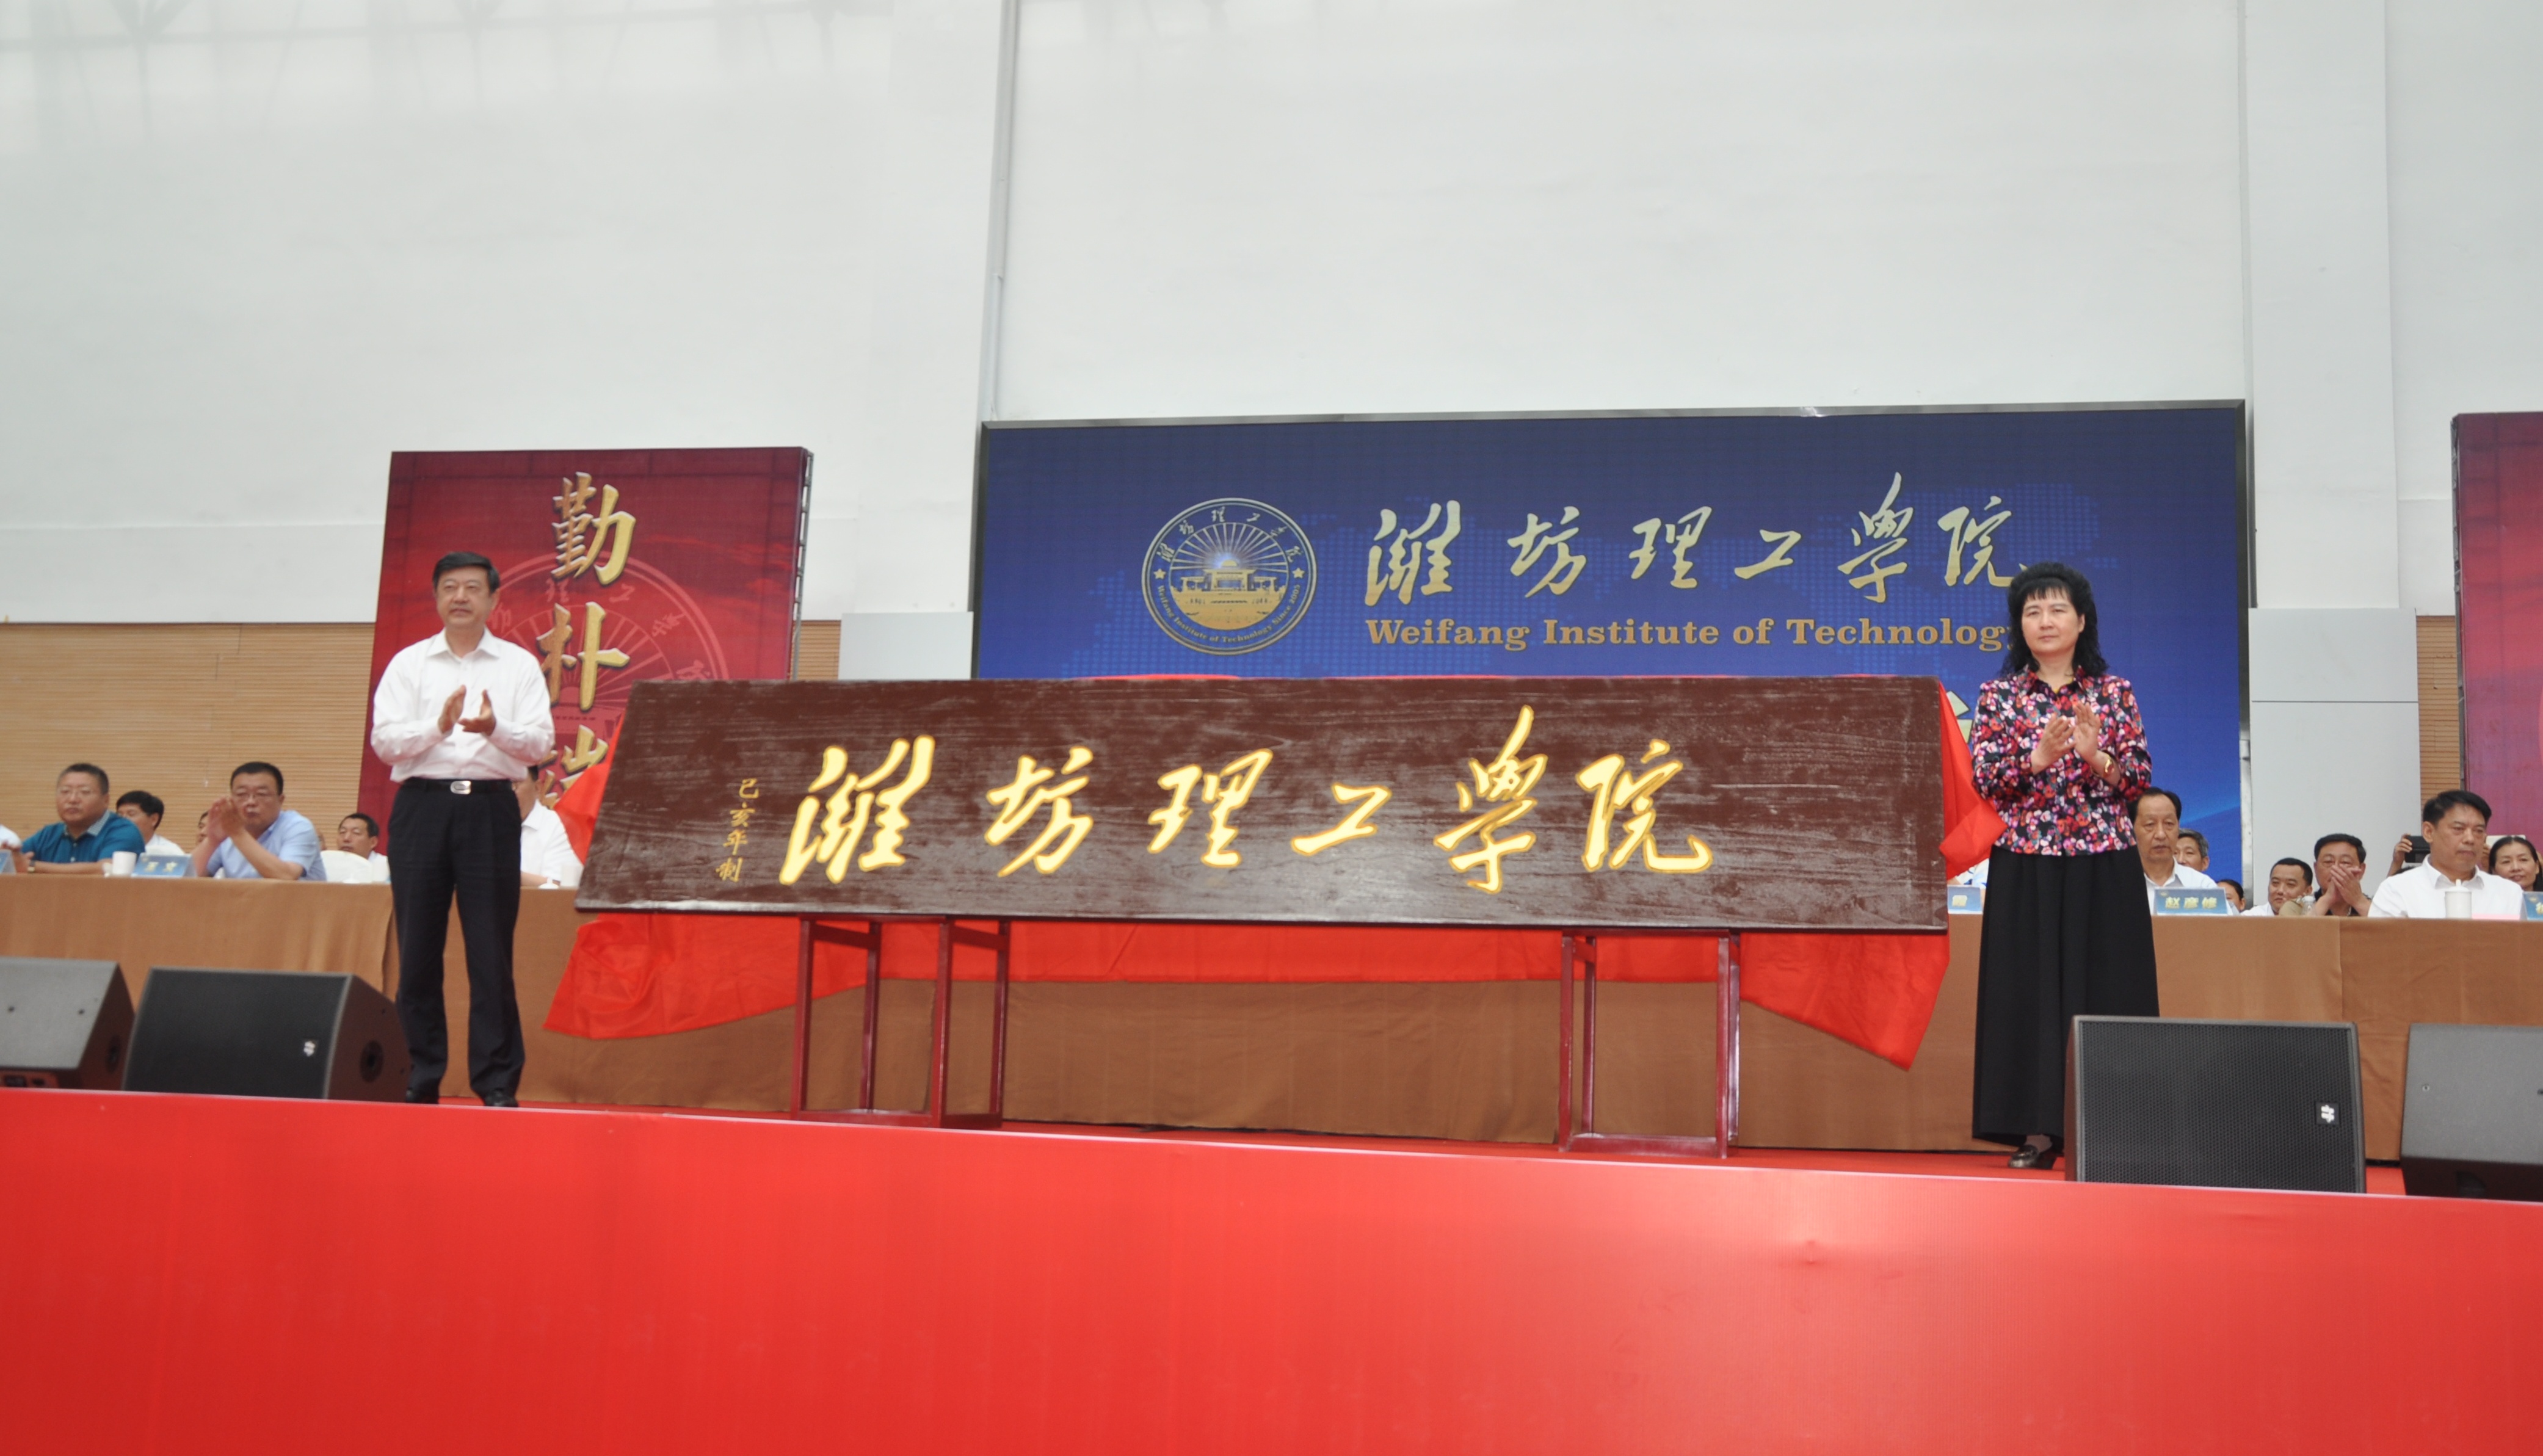 李霞宣读了《教育部关于同意山东师范大学历山学院转设为潍坊理工学院